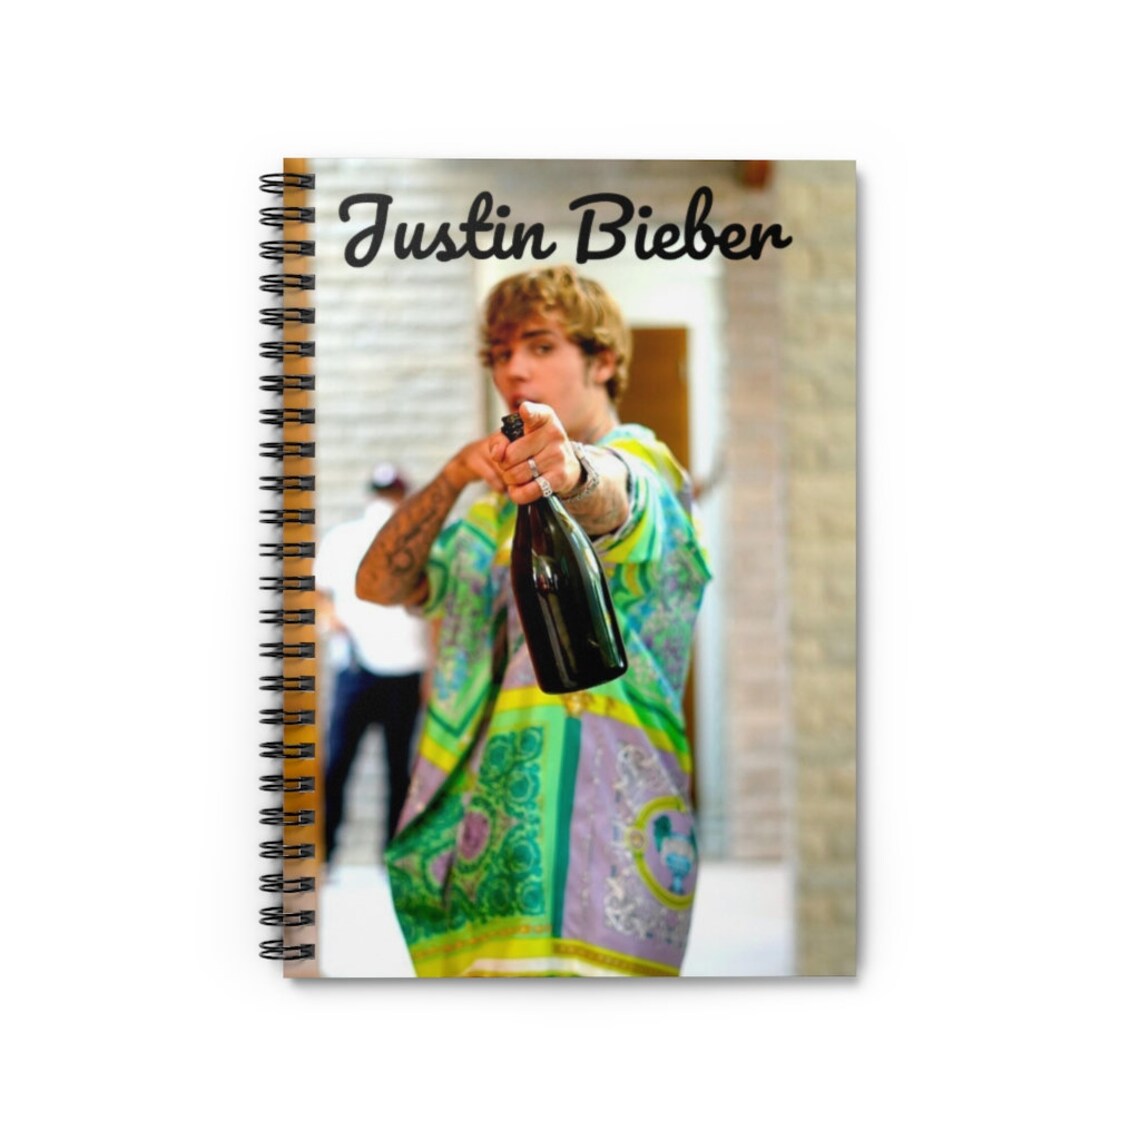 Justin Bieber Spiral Notebook Ruled Line | Etsy